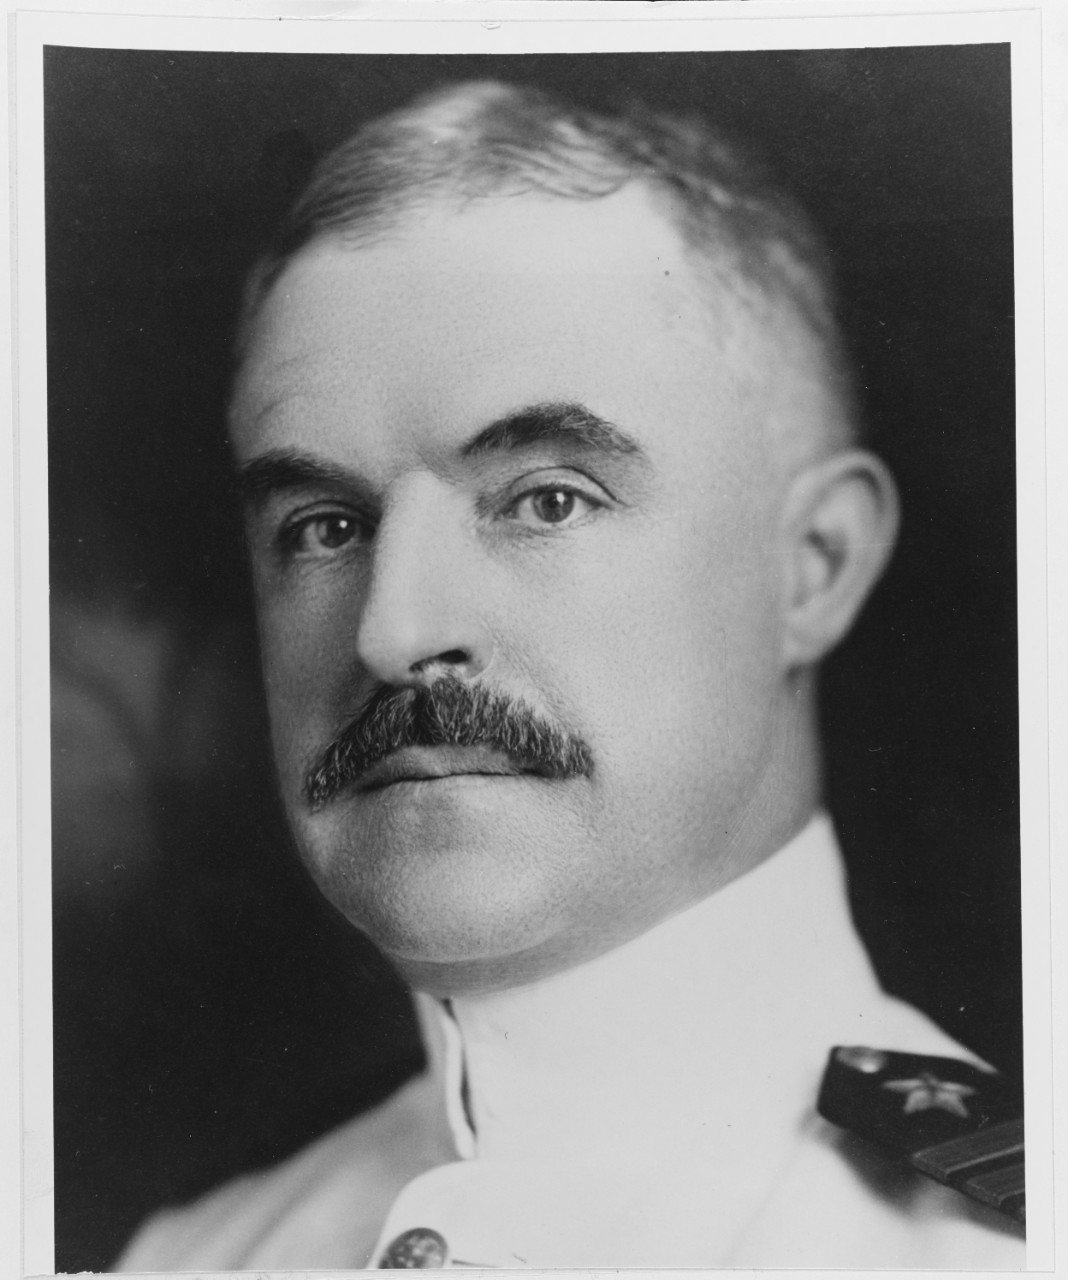 Capt. George R. Marvell